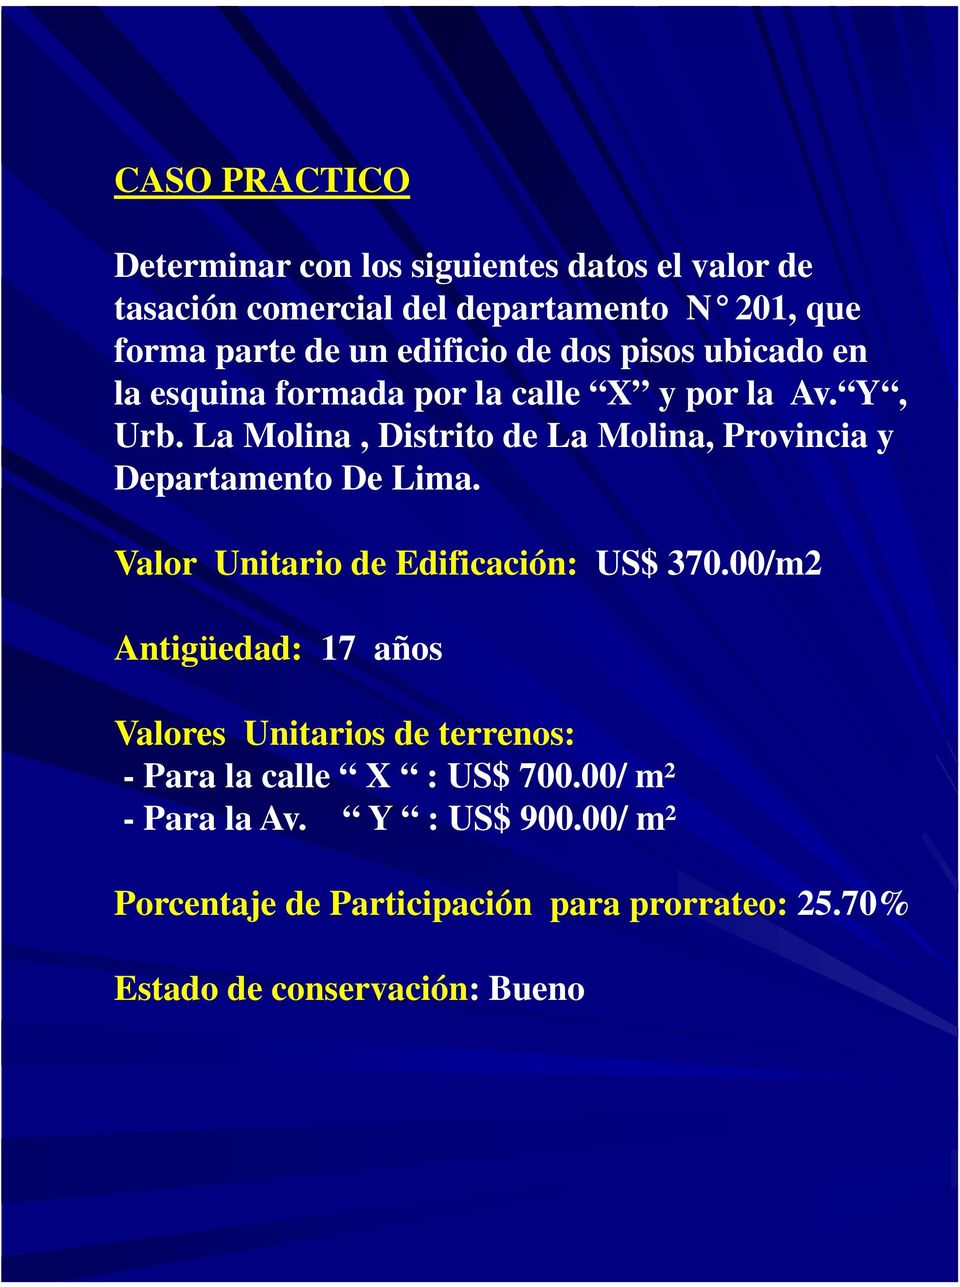 La Molina, Distrito de La Molina, Provincia y Departamento De Lima. Valor Unitario de Edificación: US$ 370.